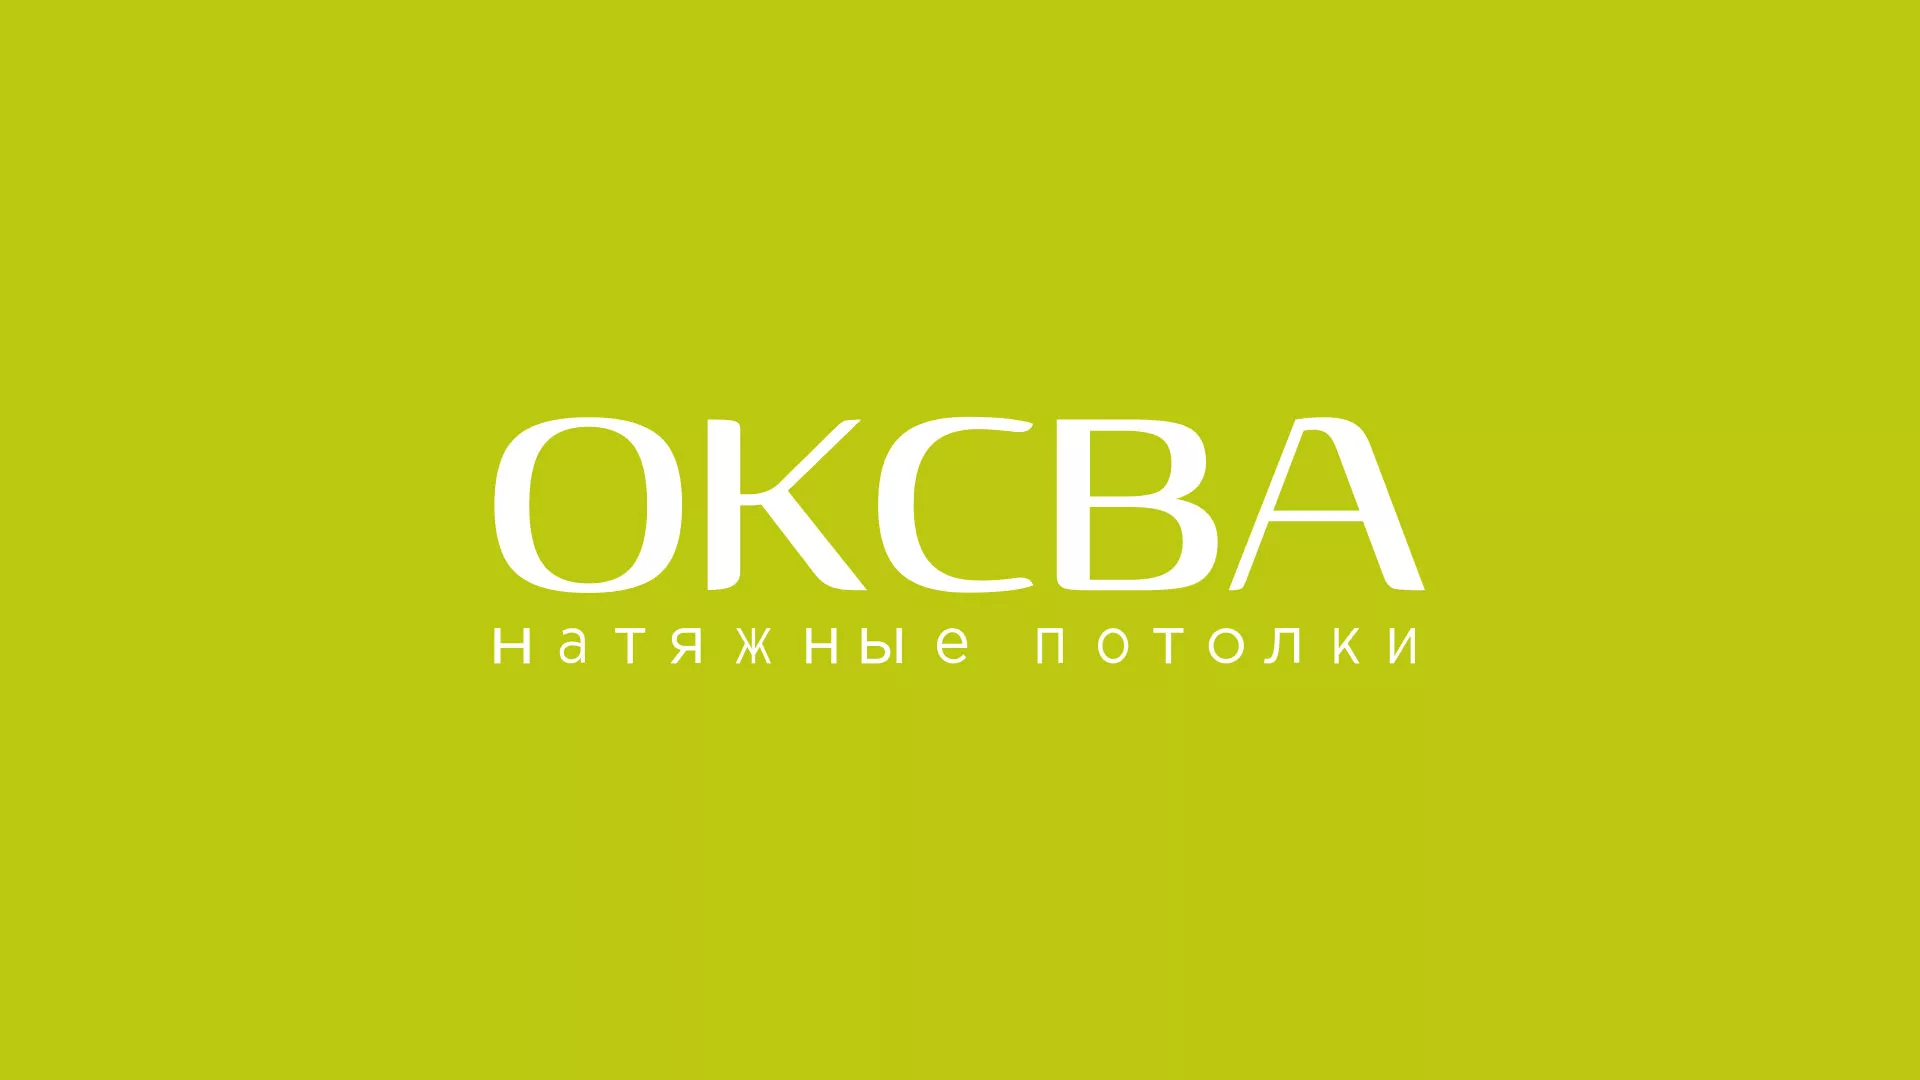 Создание сайта по продаже натяжных потолков для компании «ОКСВА» в Бугуруслане